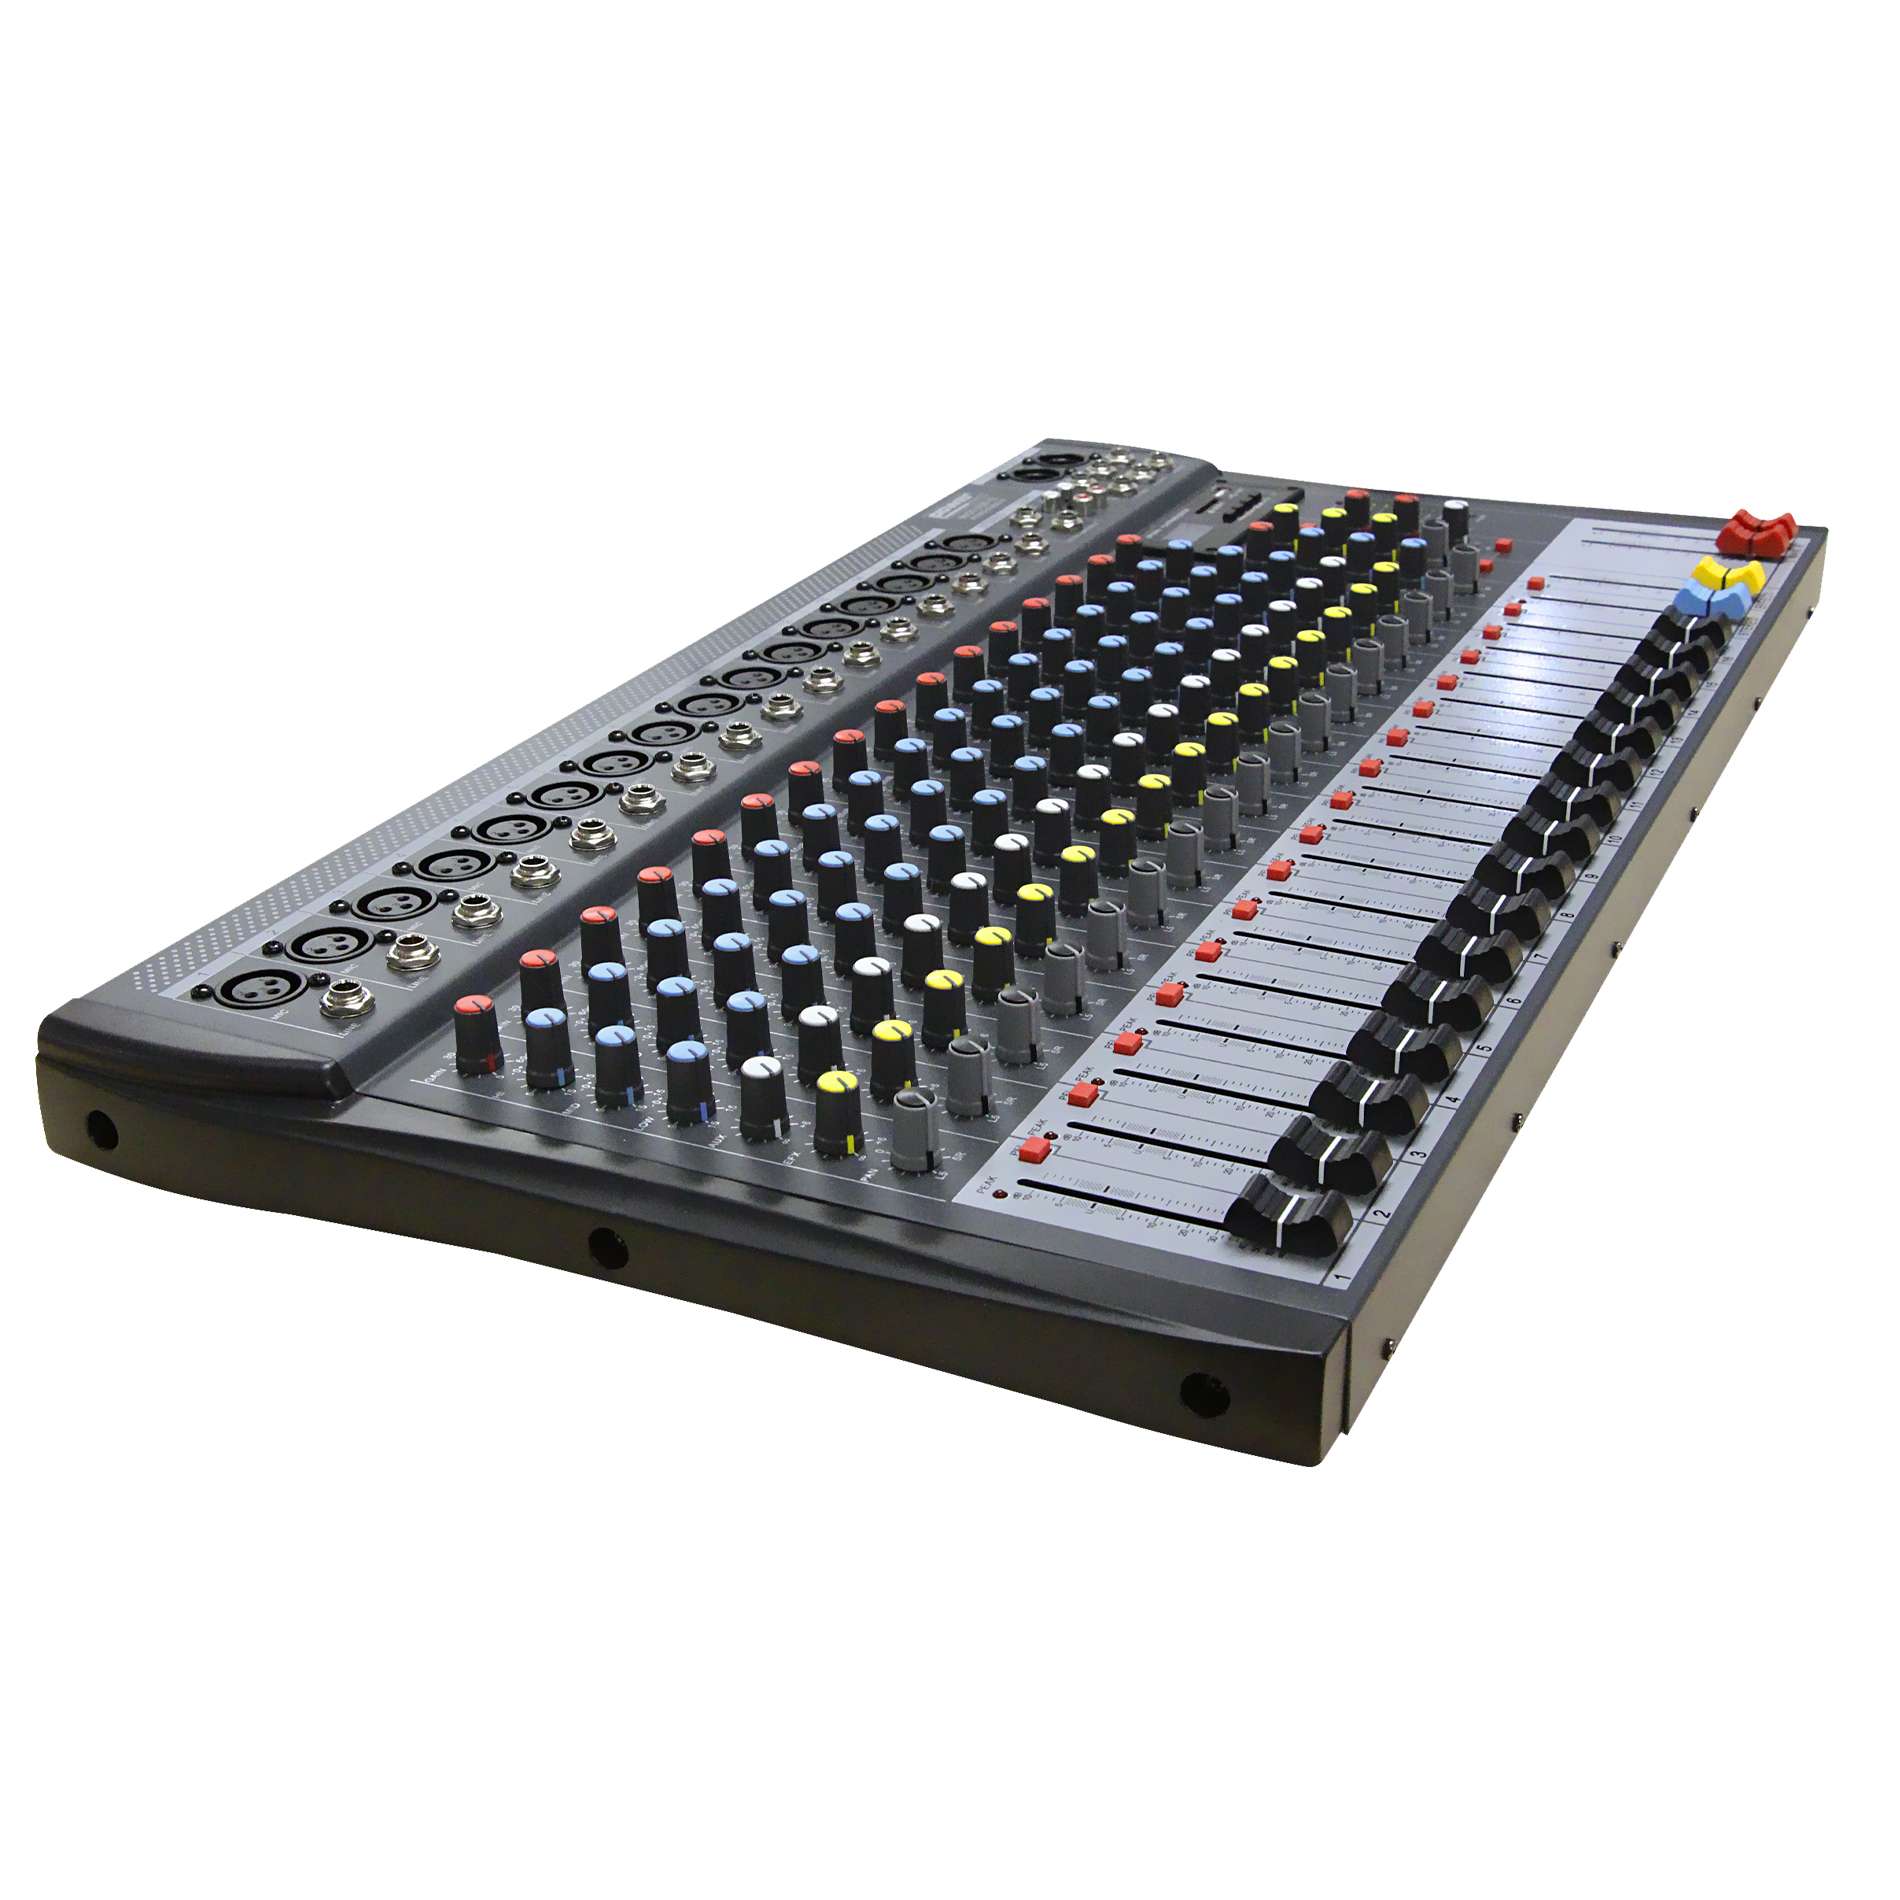 Power Acoustics Mx20 Usb V2 - Analog mixing desk - Variation 1